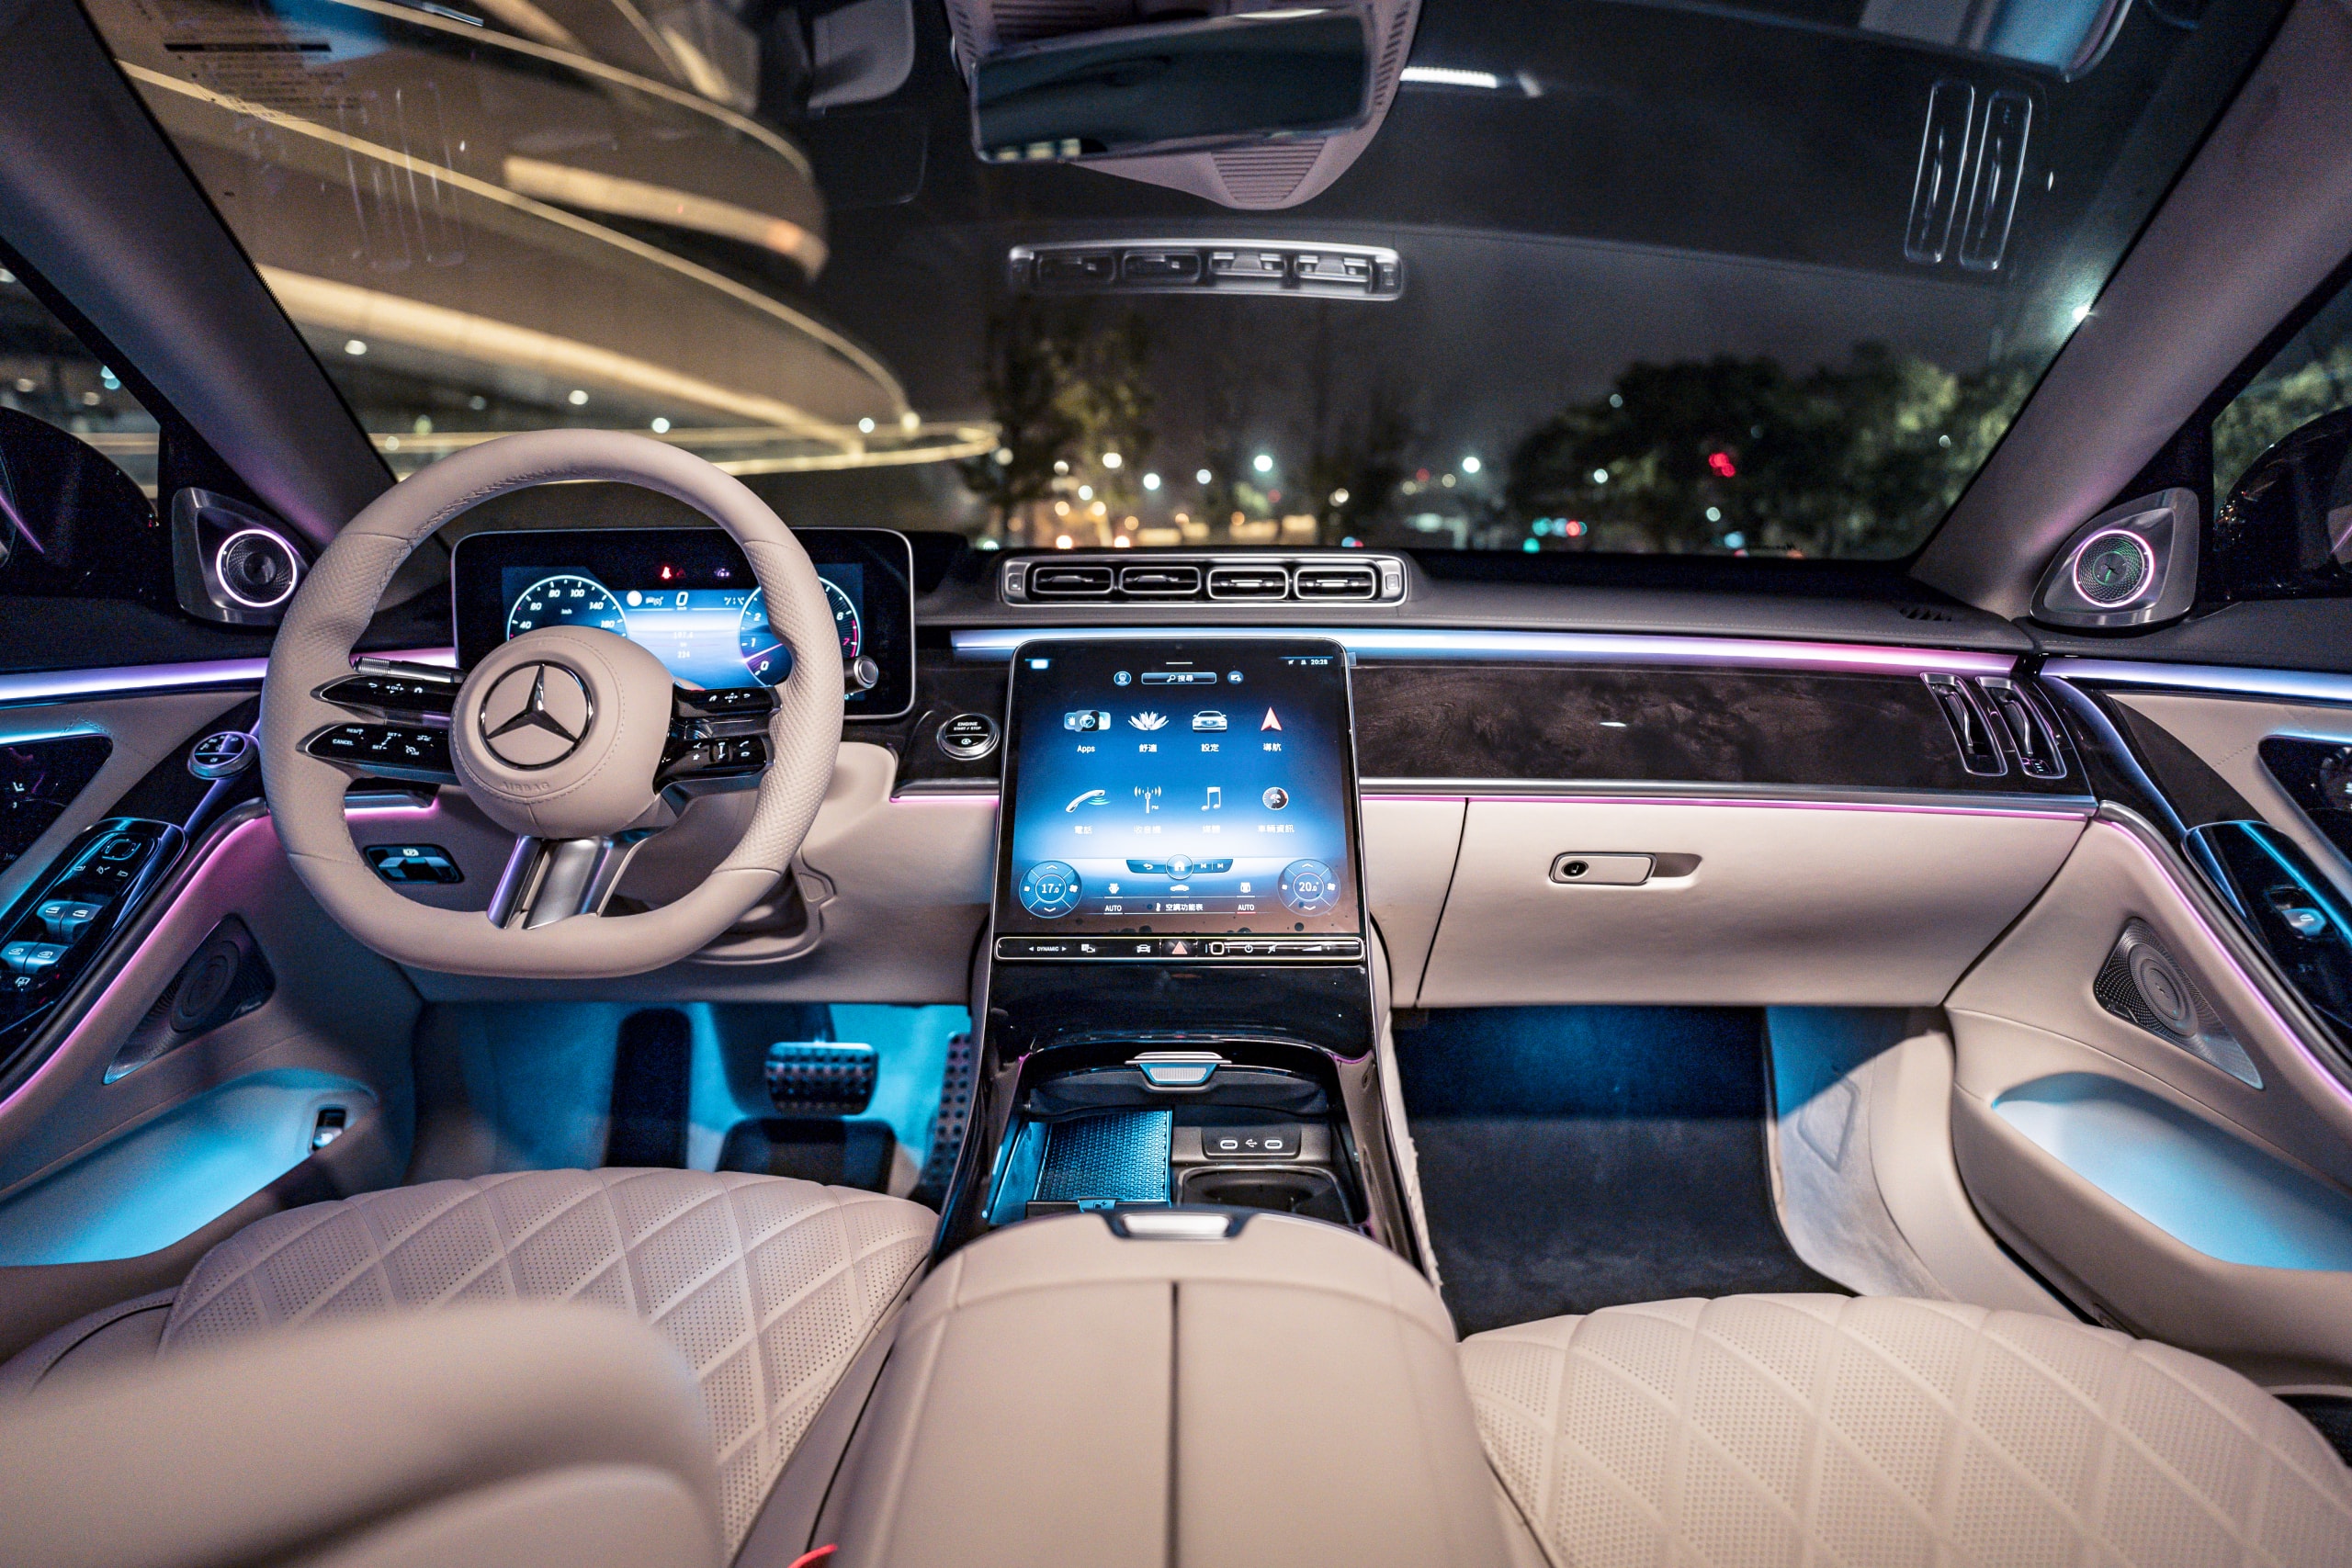 Mercedes-Benz 正式發表全新改款 S-Class 豪華車系